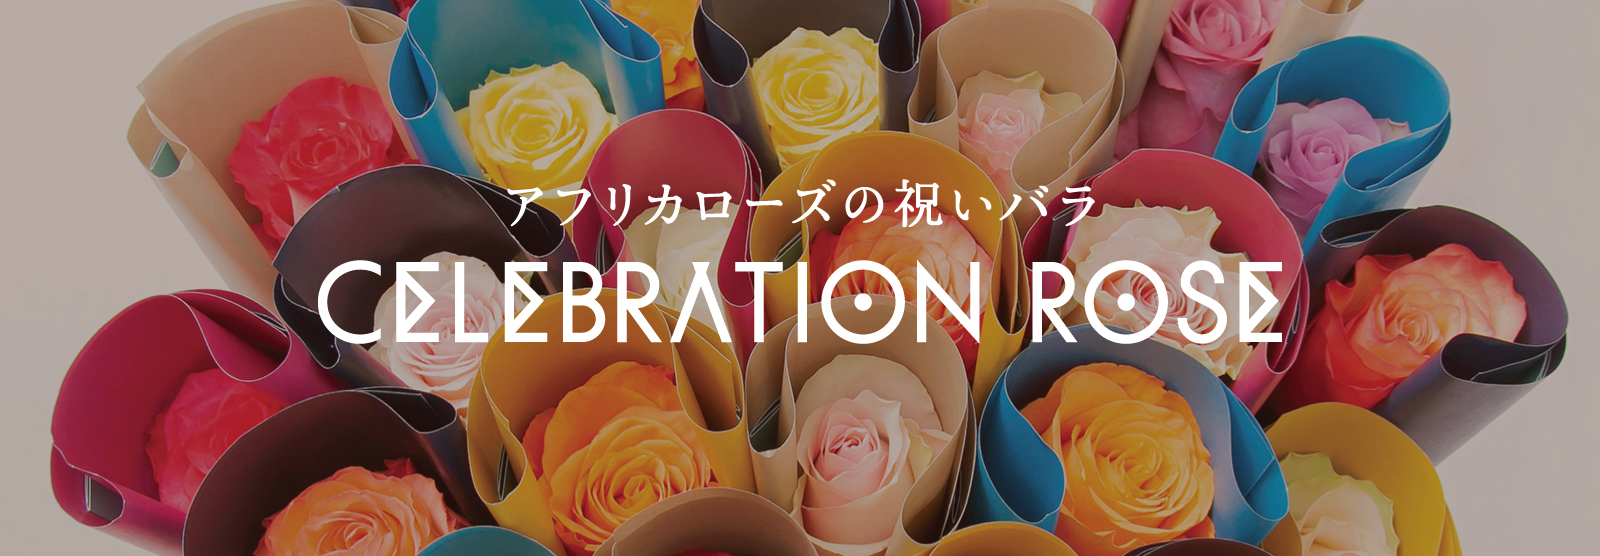 新規出店祝い、周年記念のお祝いに〜アフリカローズの祝いバラ〜